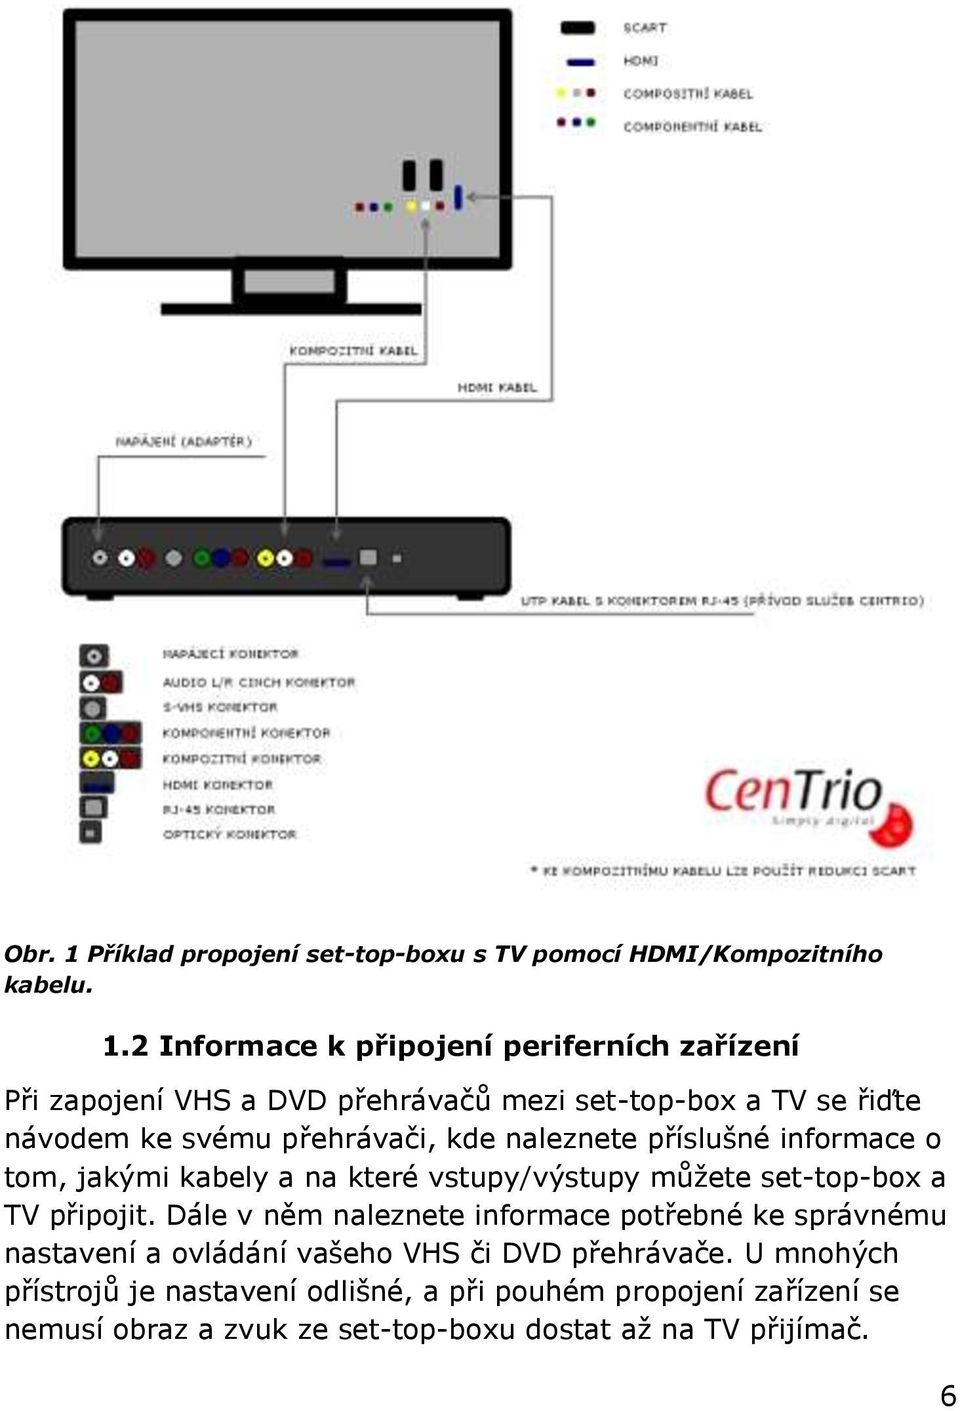 2 Informace k připojení periferních zařízení Při zapojení VHS a DVD přehrávačů mezi set-top-box a TV se řiďte návodem ke svému přehrávači, kde